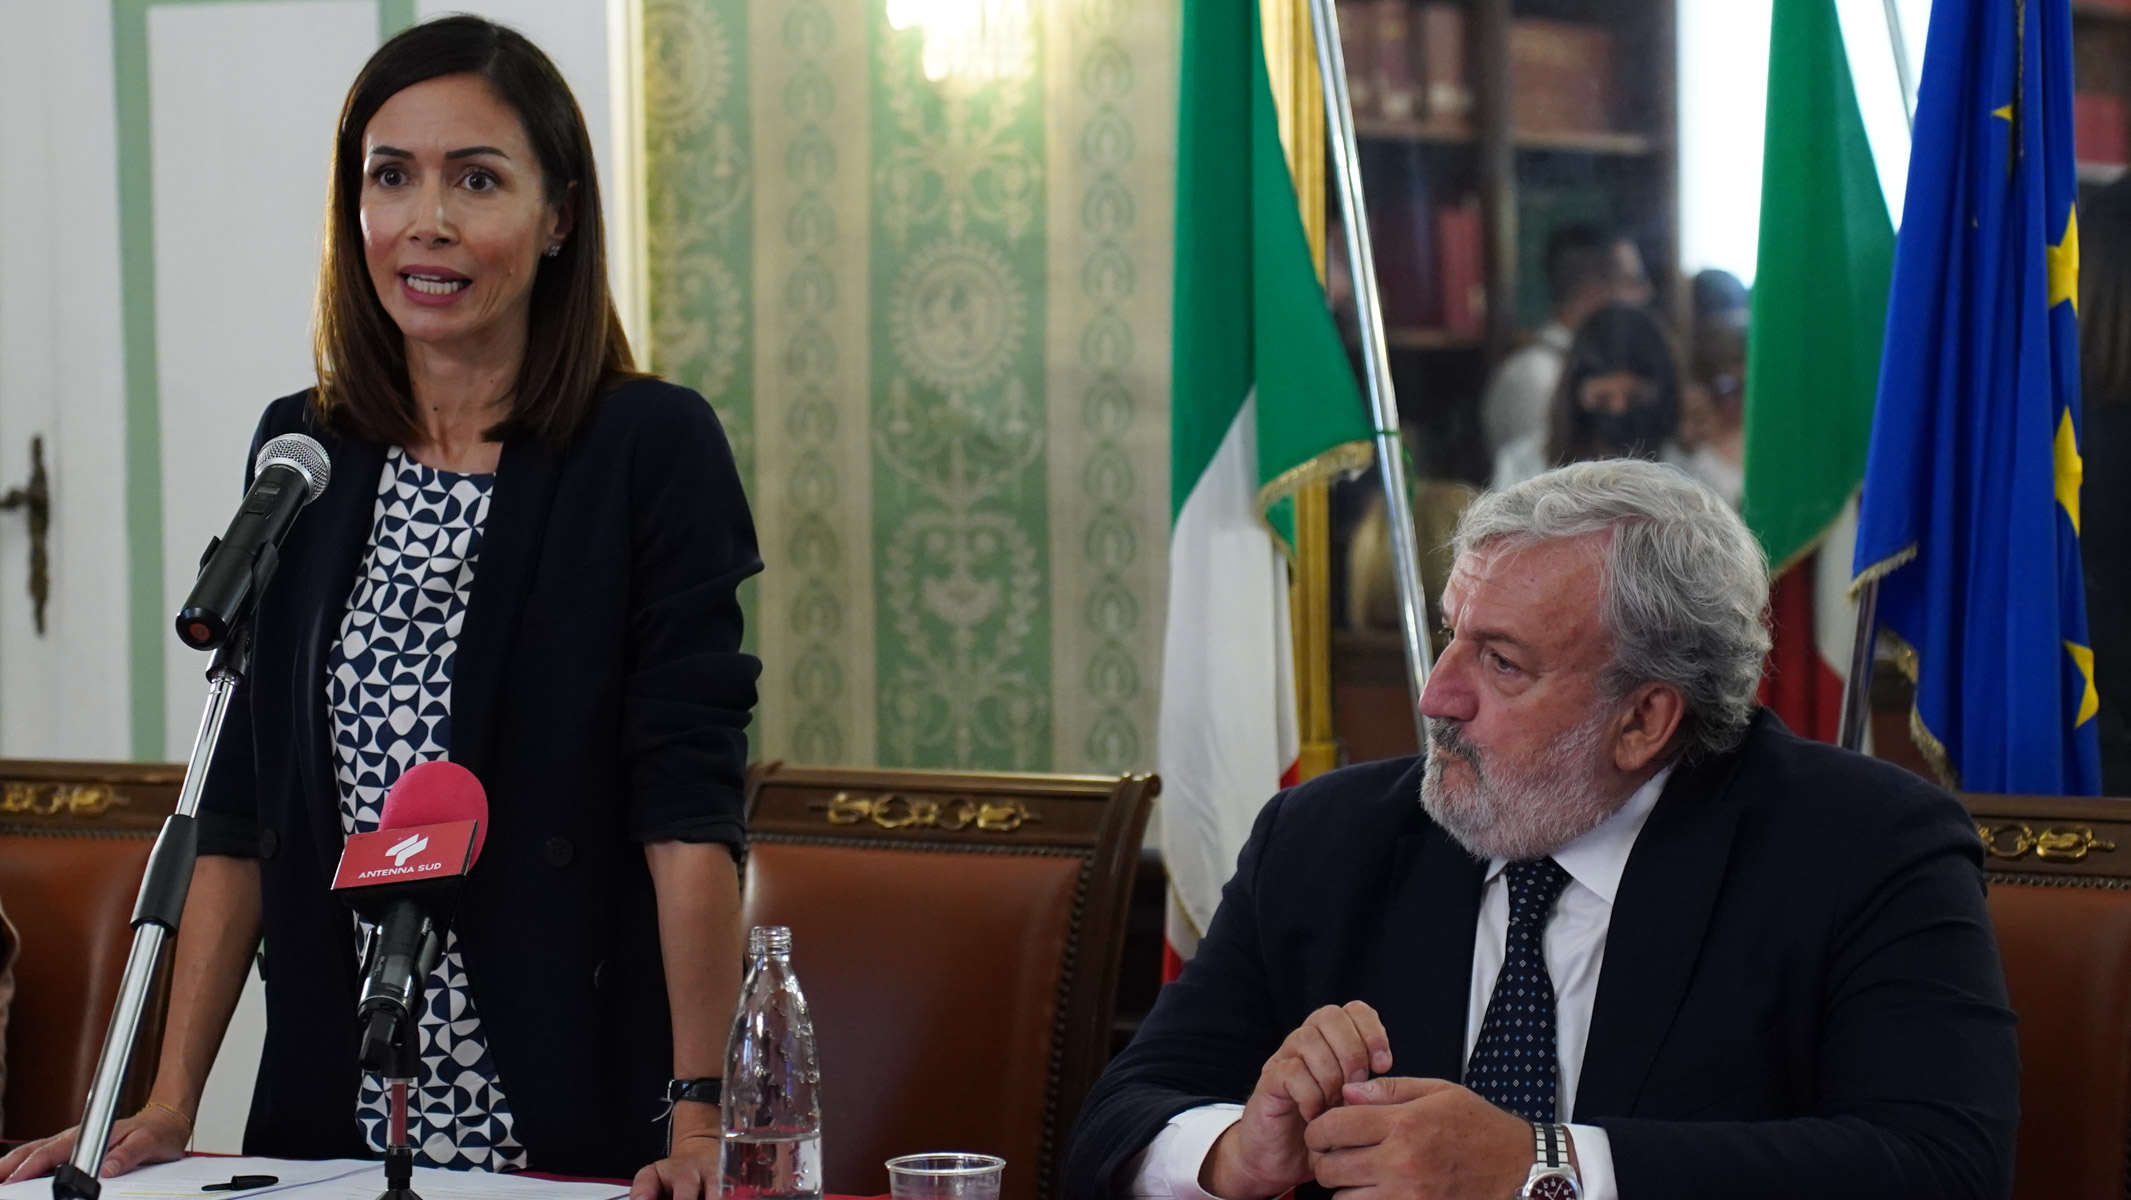 Galleria Emiliano alla firma del CIS Brindisi-Lecce insieme alla ministra Carfagna: “Somme importanti, la Puglia saprà correre” - Diapositiva 8 di 14